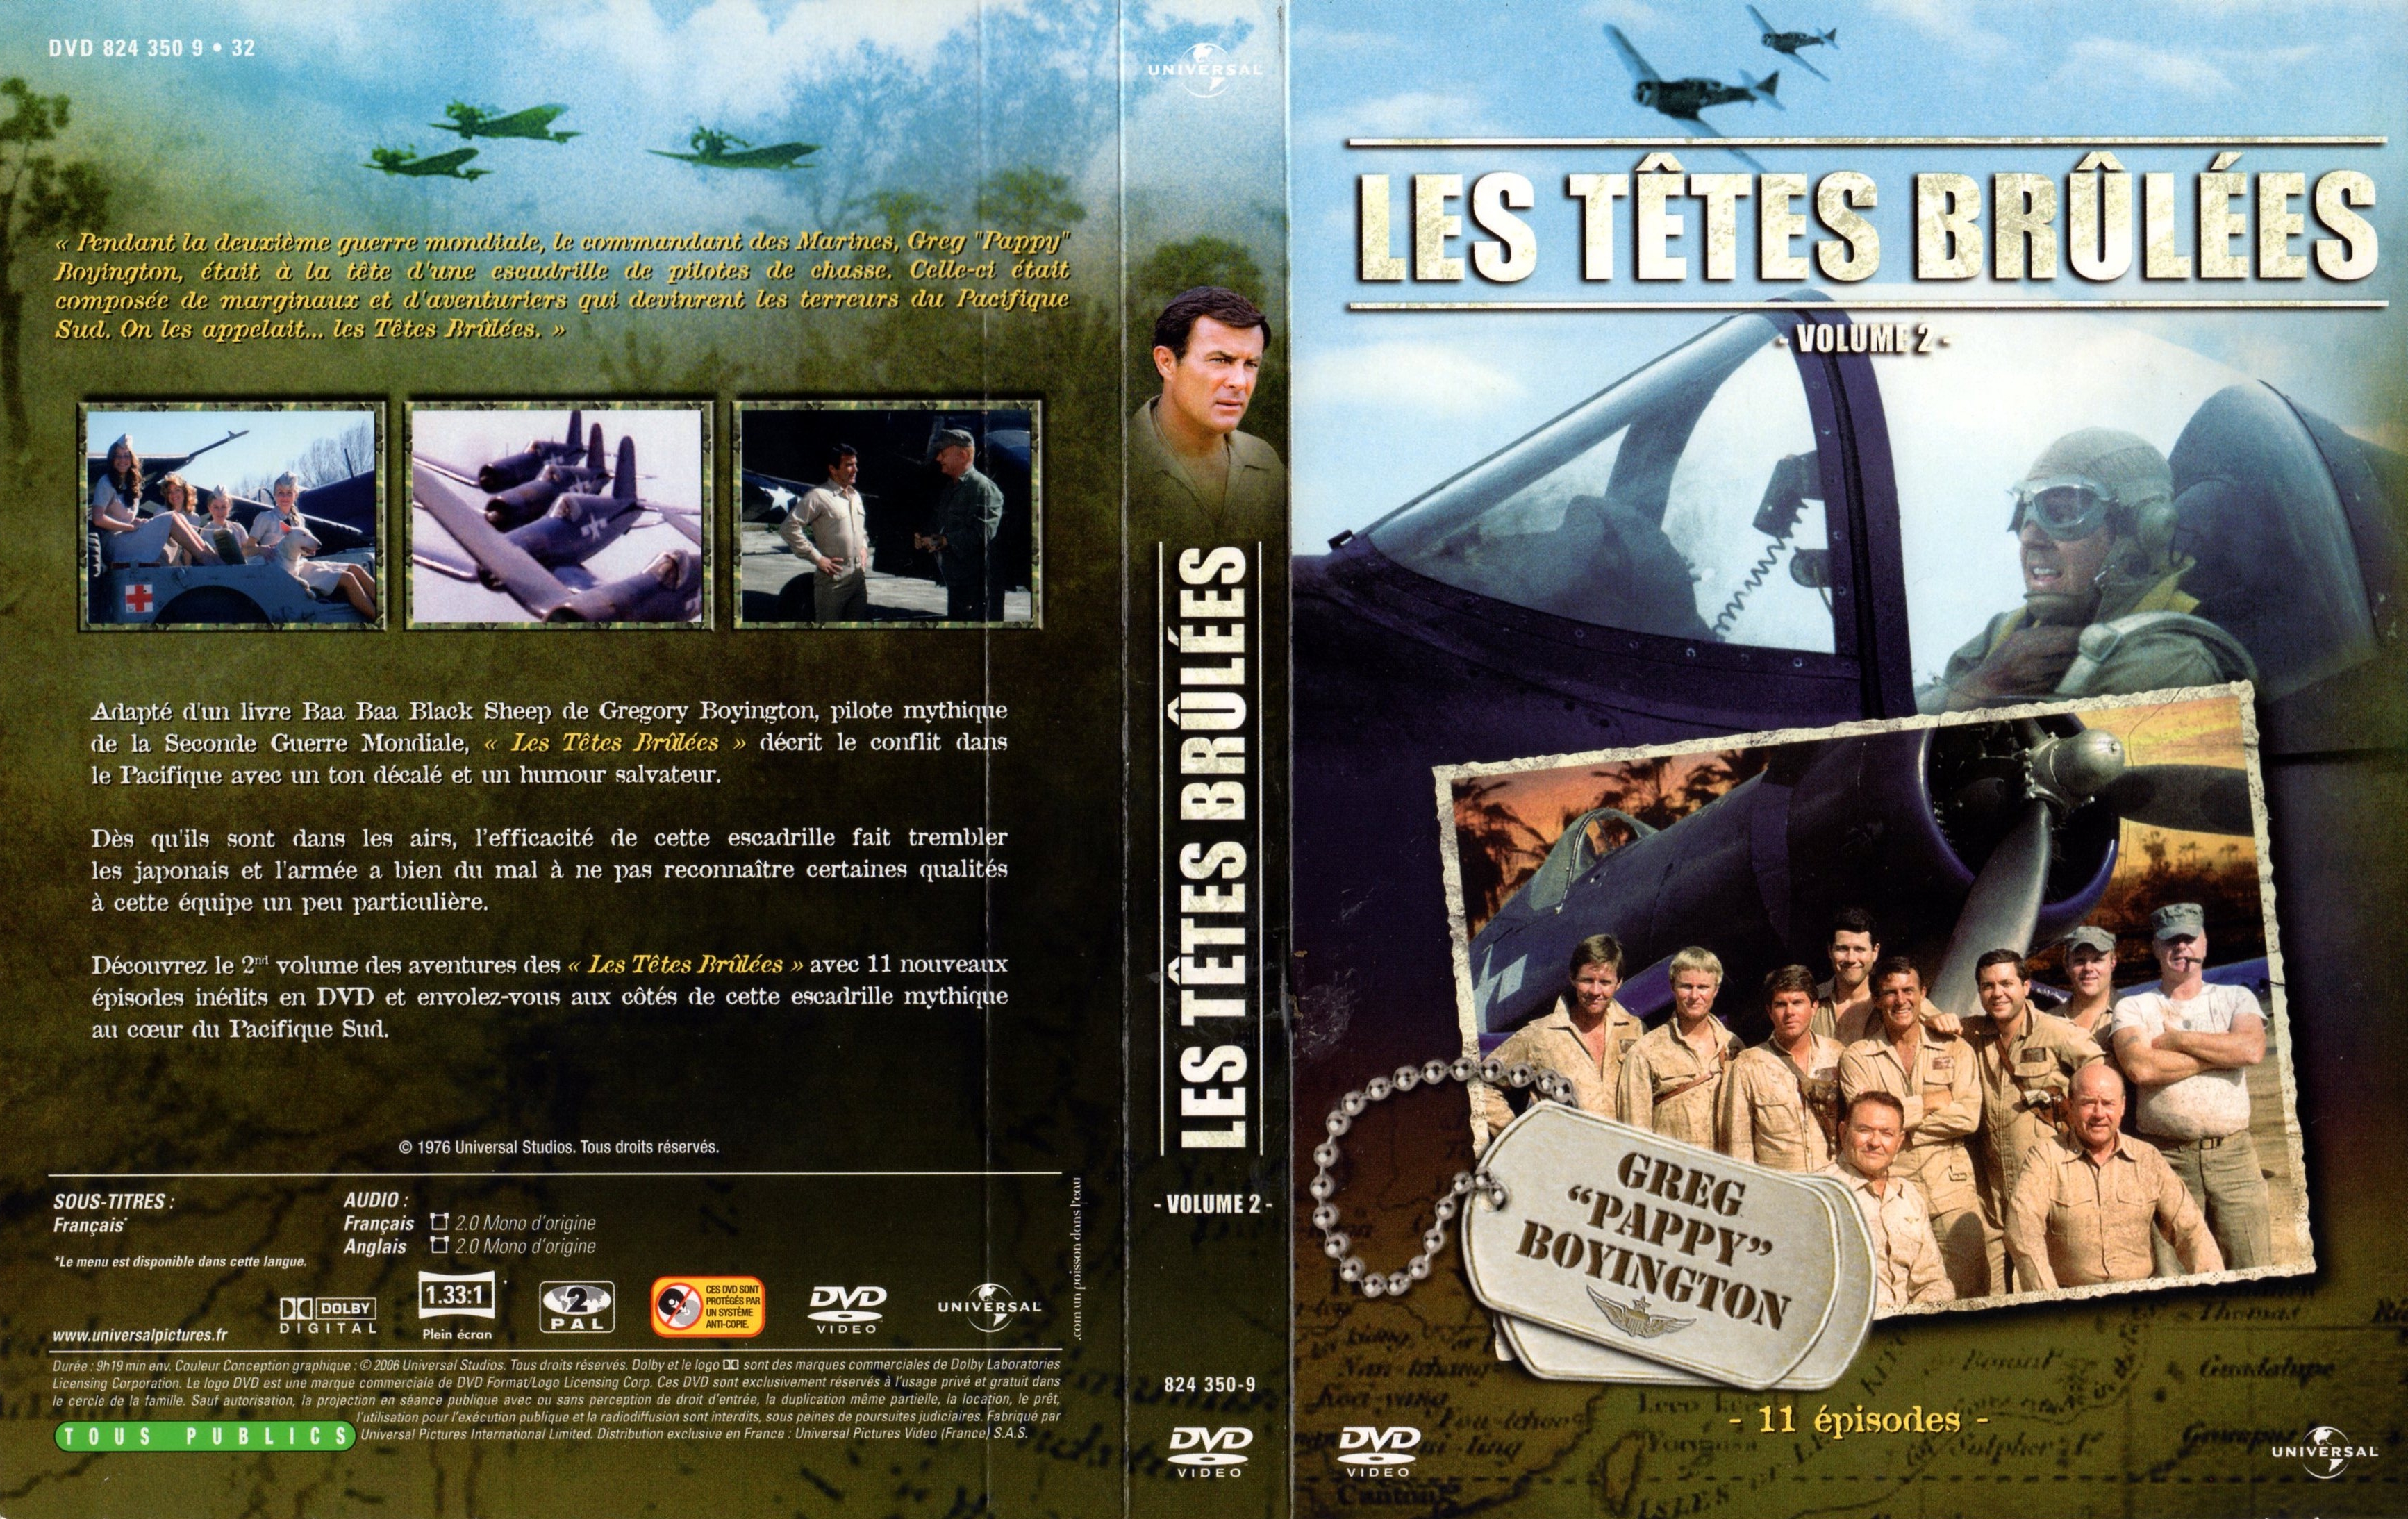 Jaquette DVD Les ttes brules vol 2